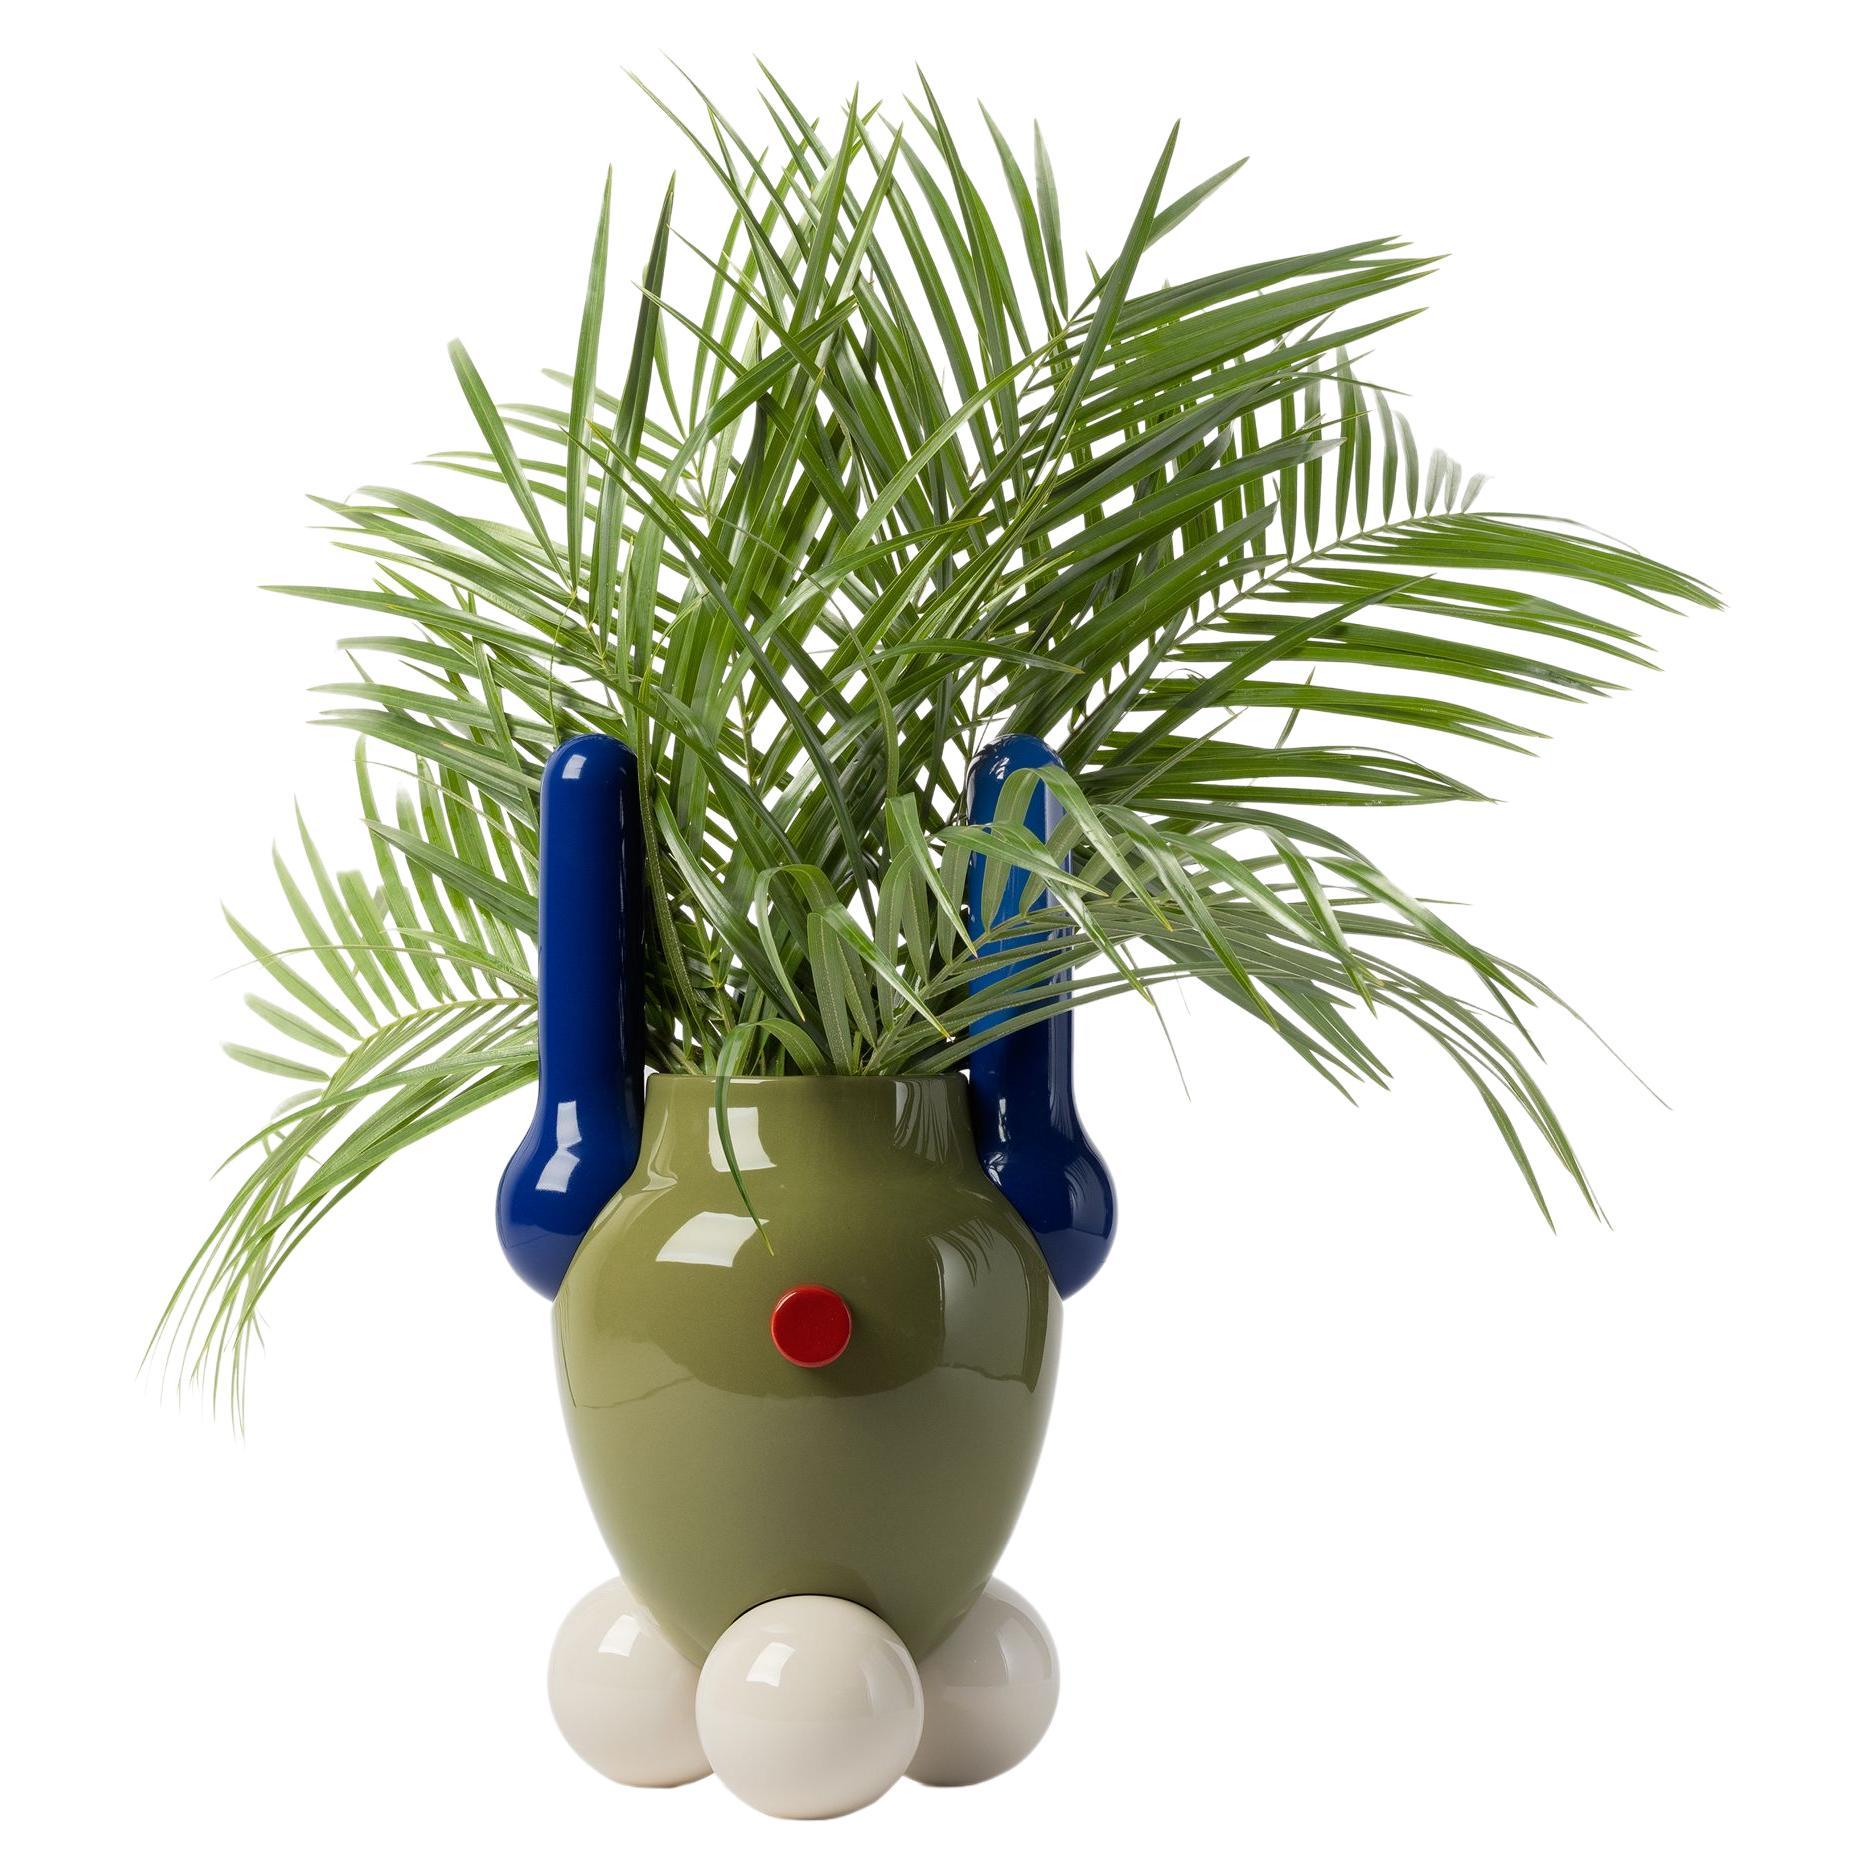 Contemporary Explorer Vase aus glasierter Keramik Nr.1 von Jaime Hayon, grün, blau-weiß